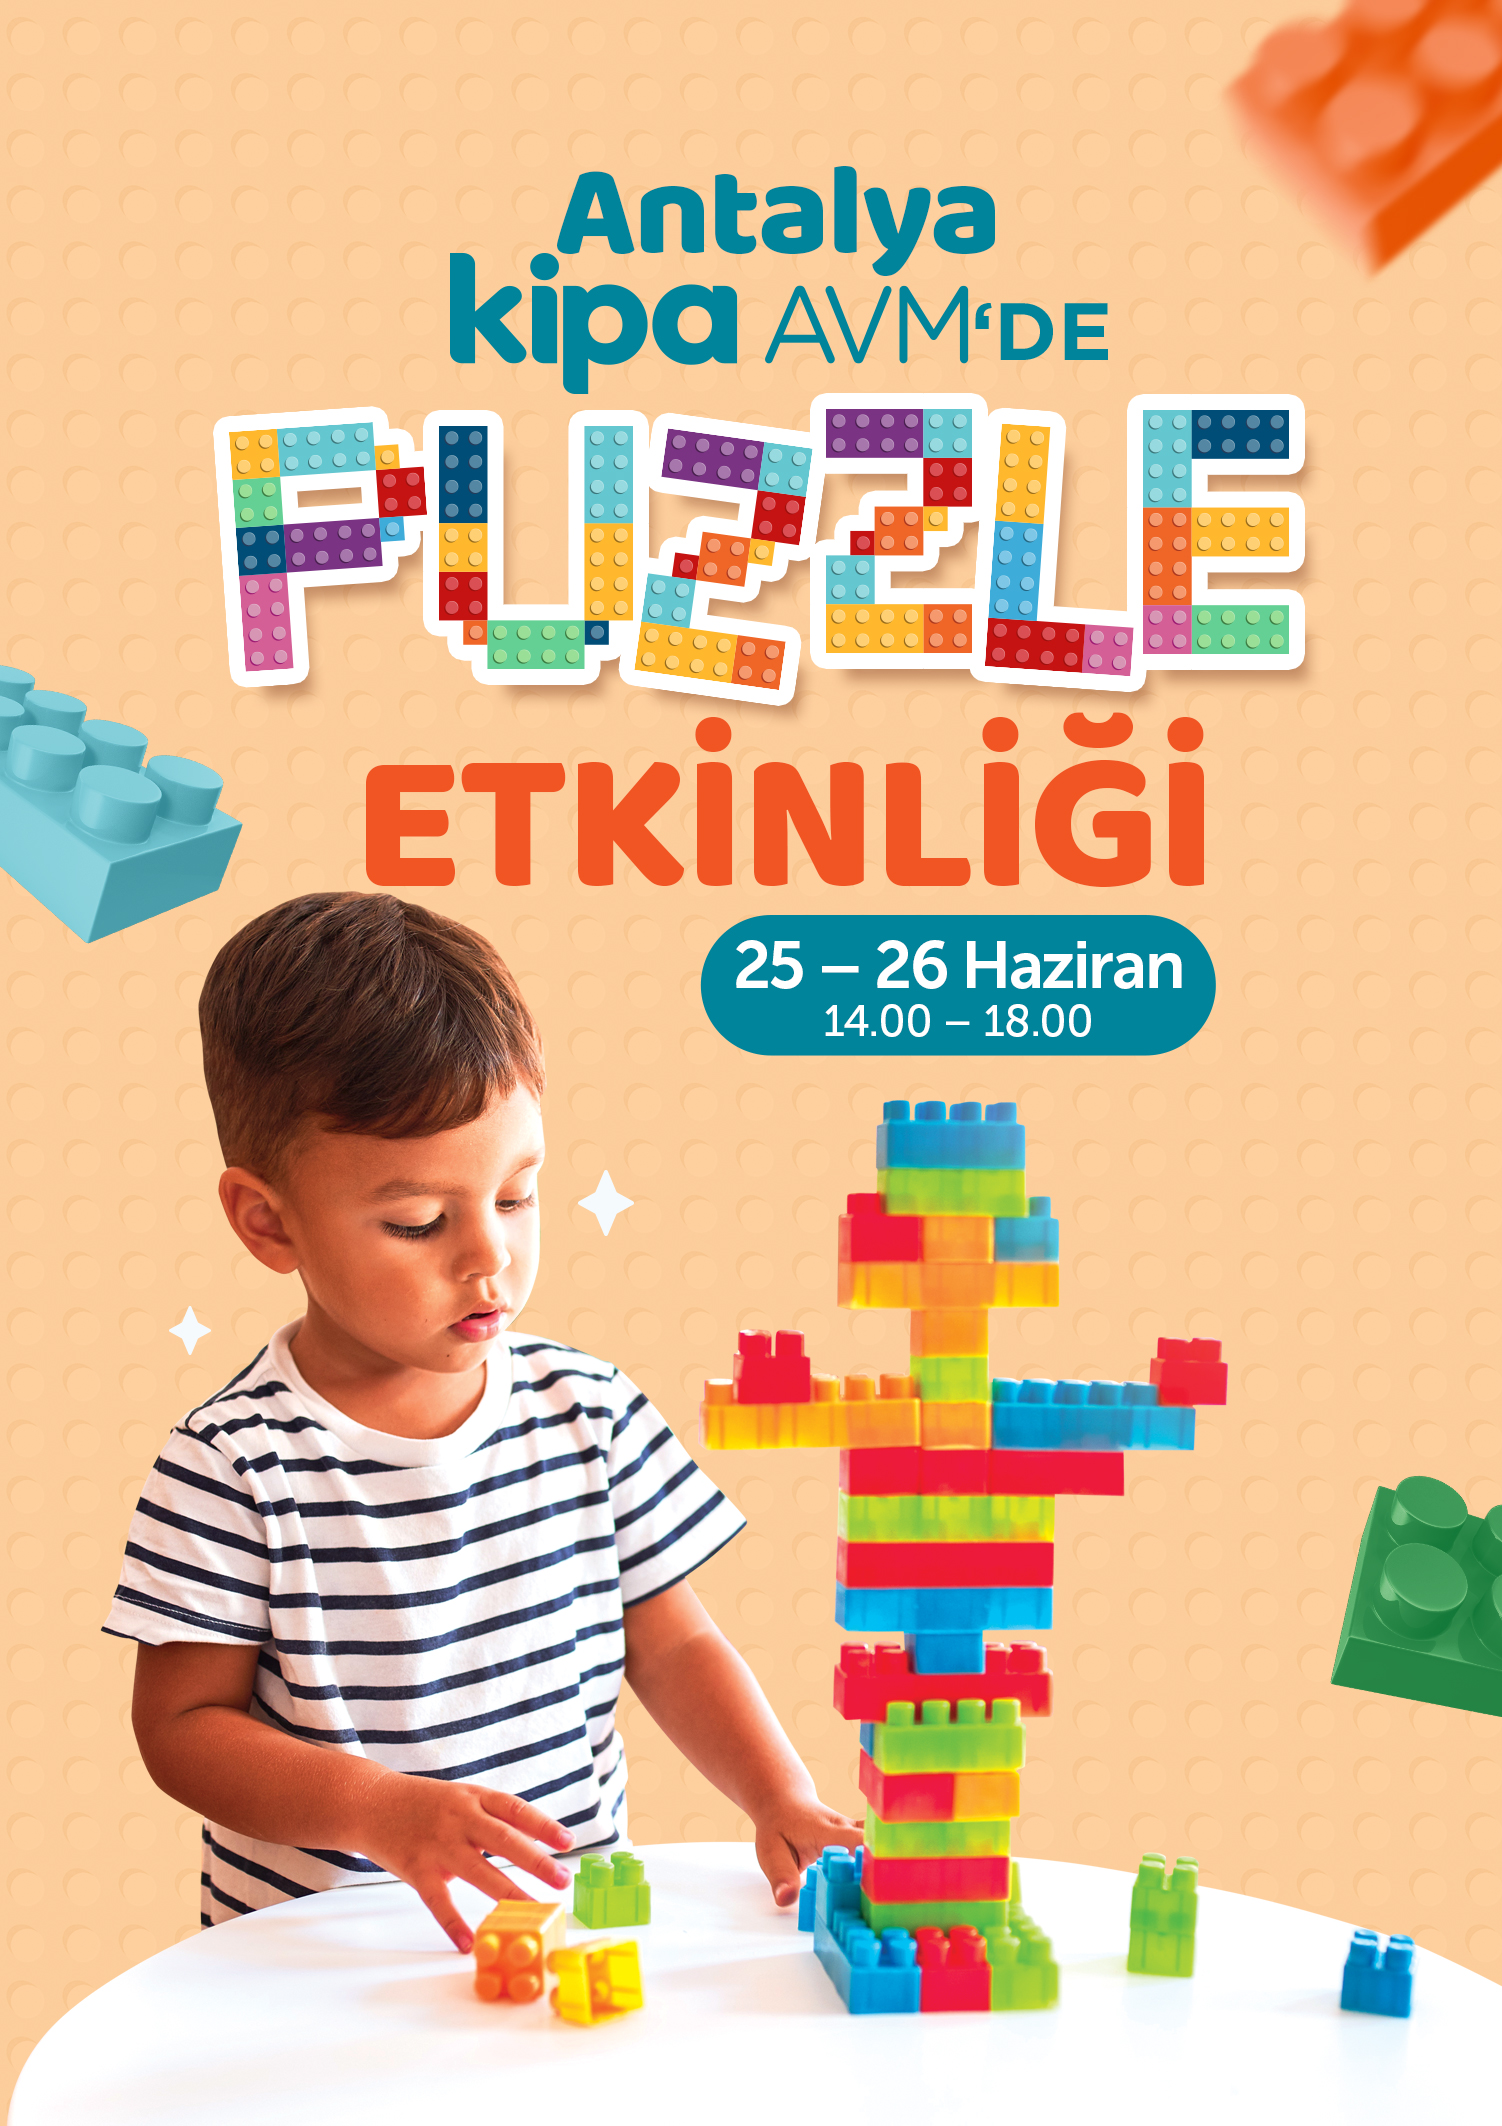 Antalya Kipa AVM'de Puzzle Etkinliği!